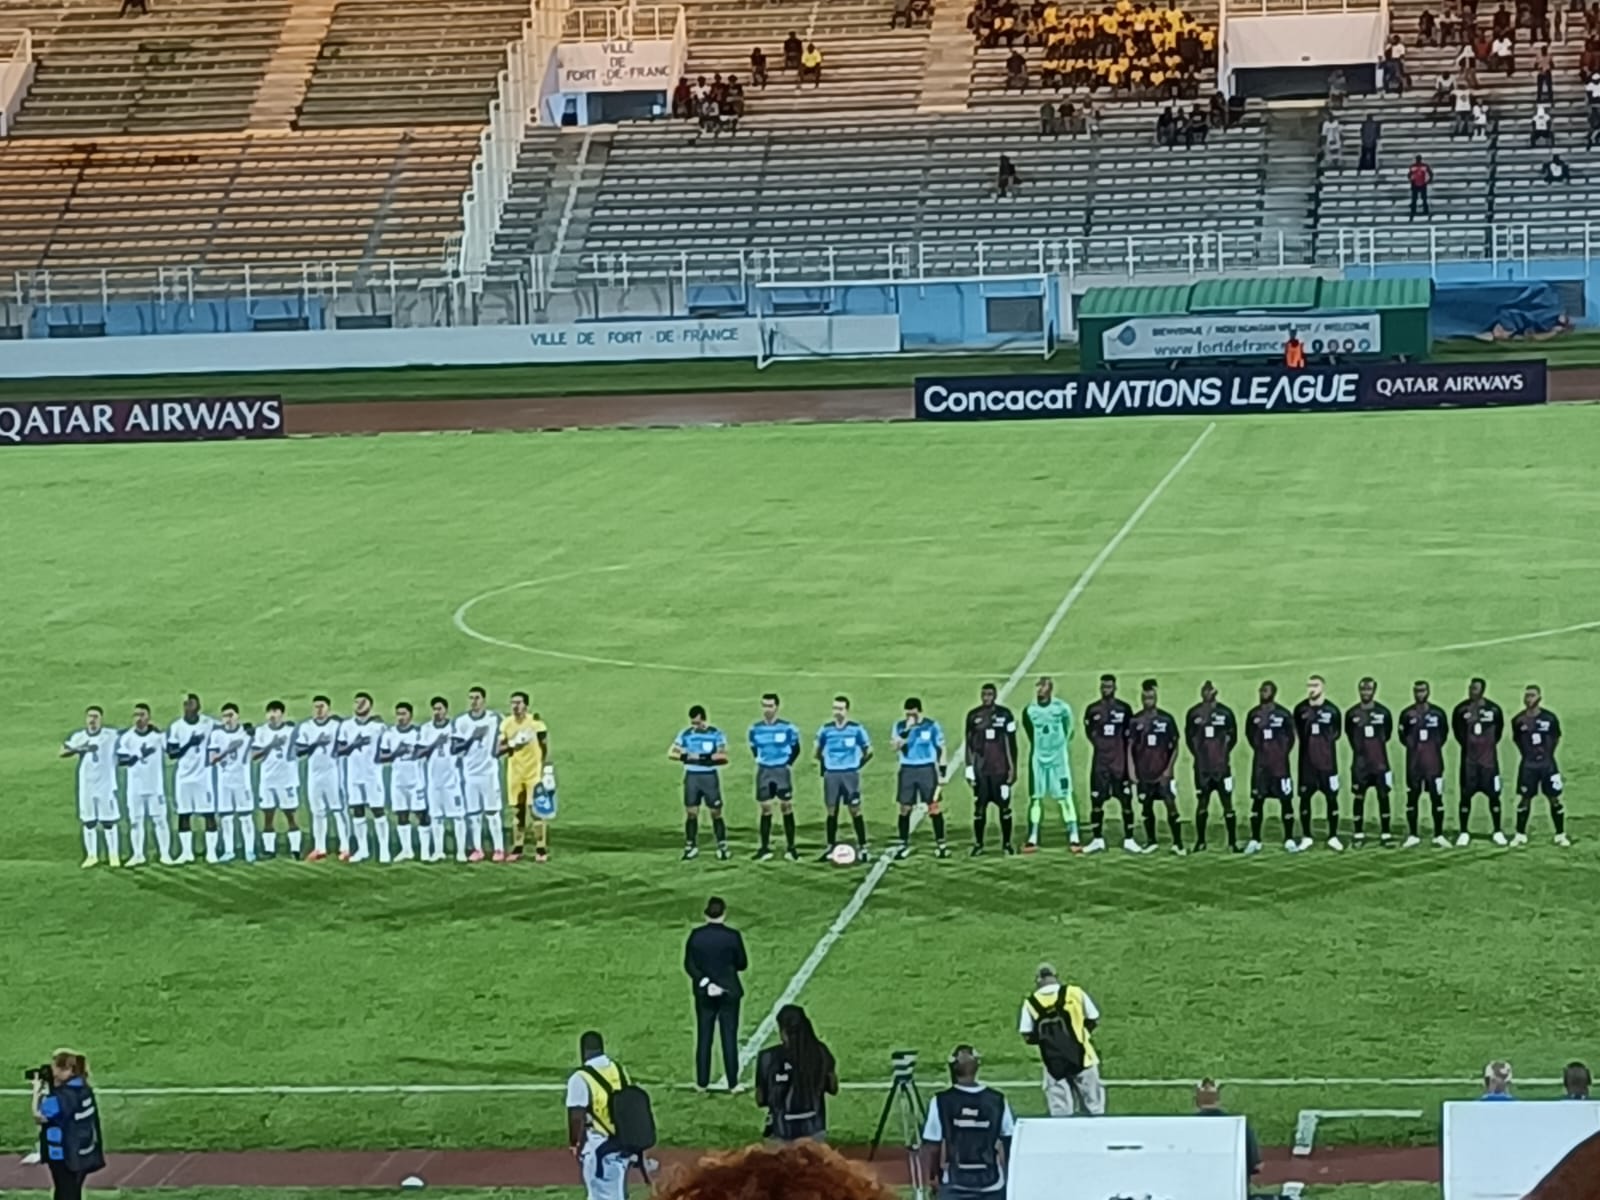     Ligue des Nations de la Concacaf : une précieuse victoire de la Martinique face au Salvador

